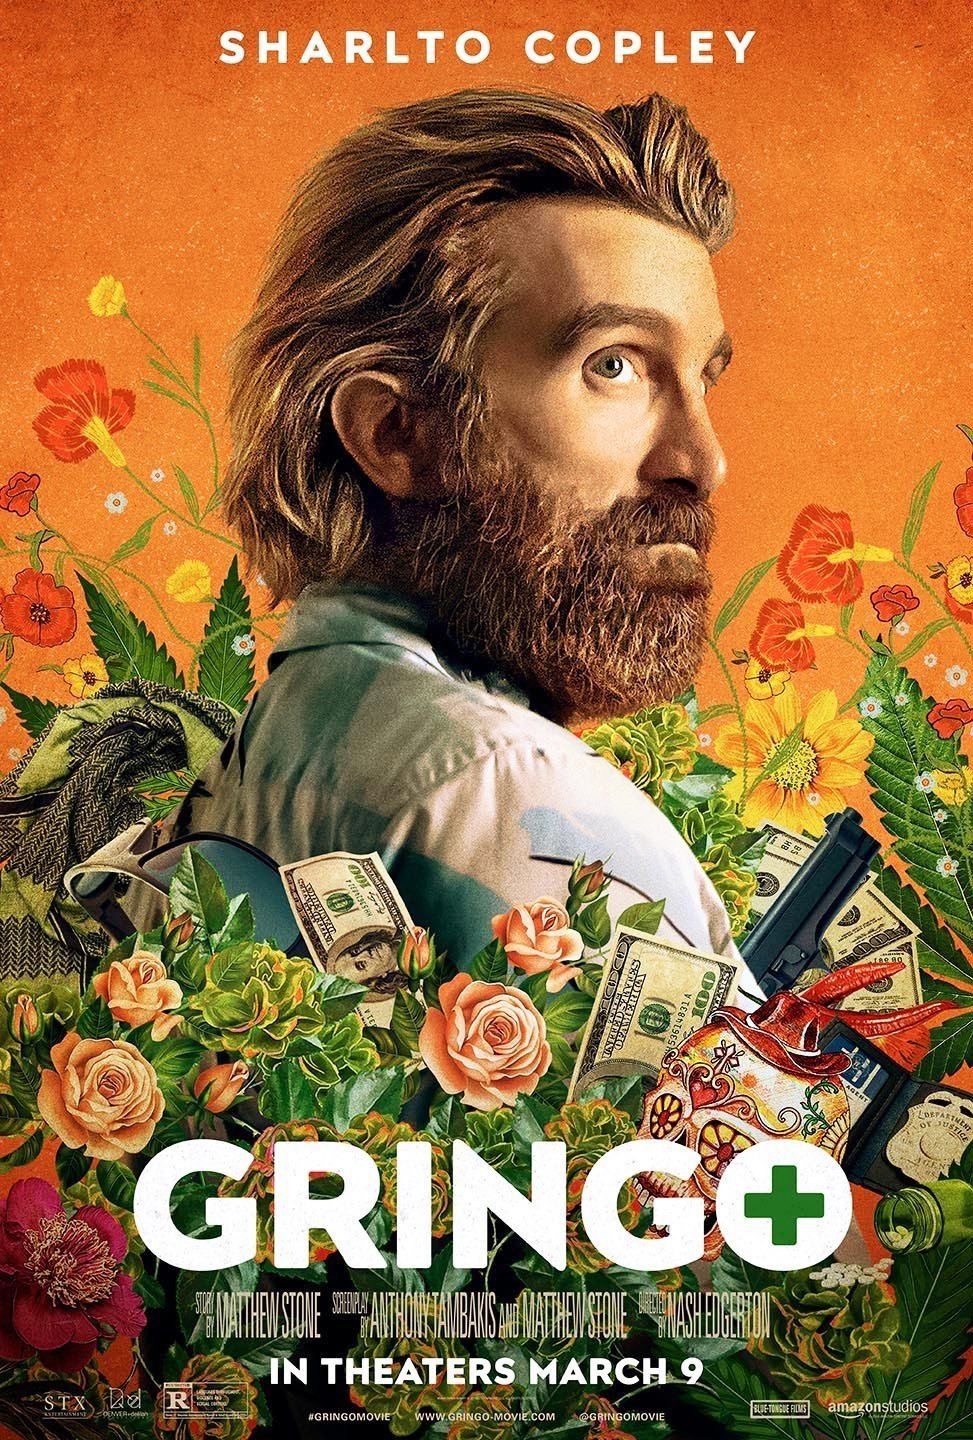 Poster of Amazon Studios' Gringo (2018)